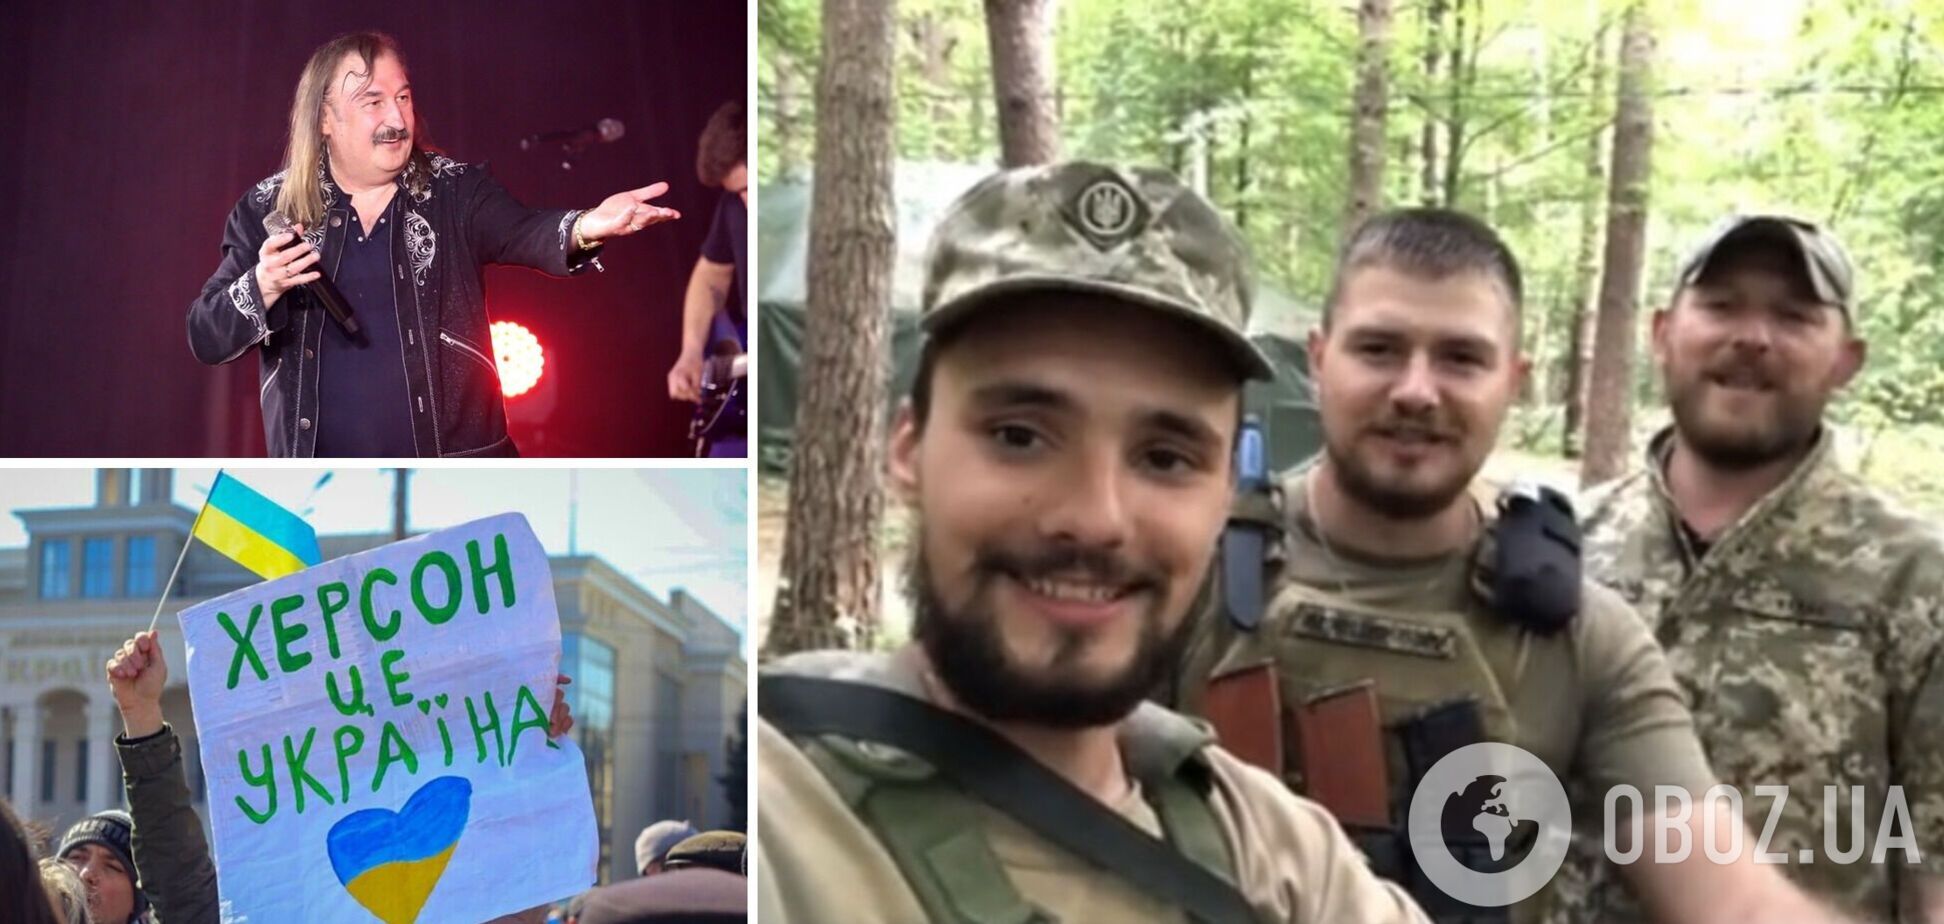 Видео, как украинские воины поют о Херсоне на мотив песни Степана Гиги, покорило сеть